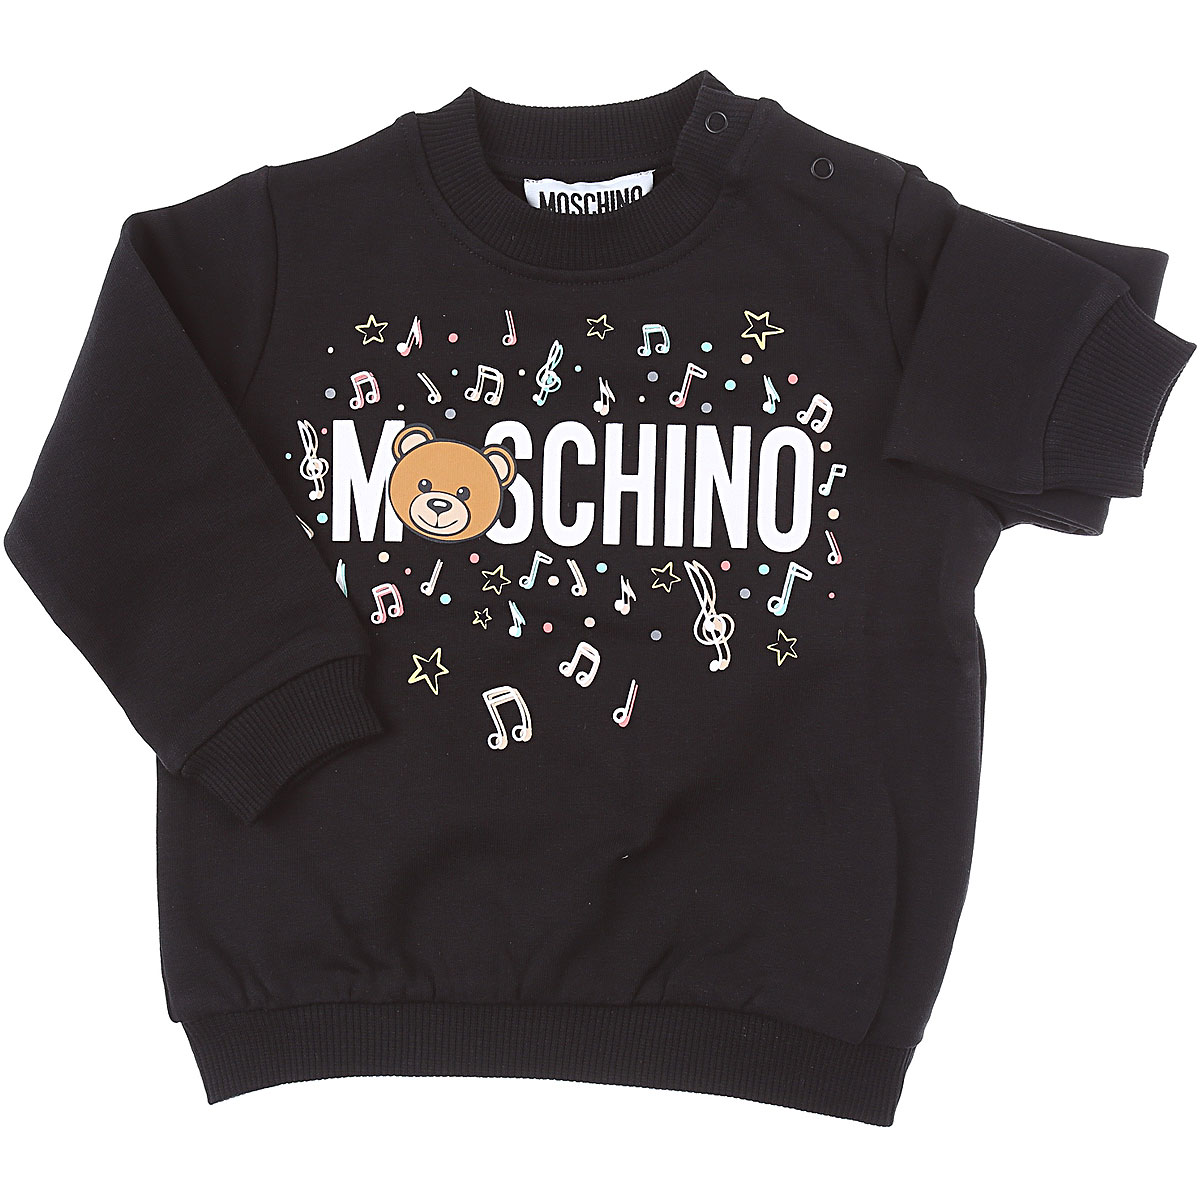 Moschino Baby Sweatshirt & Kapuzenpullover für Jungen Günstig im Sale, Schwarz, Baumwolle, 2017, 12 M 18M 24M 2Y 6M 9M